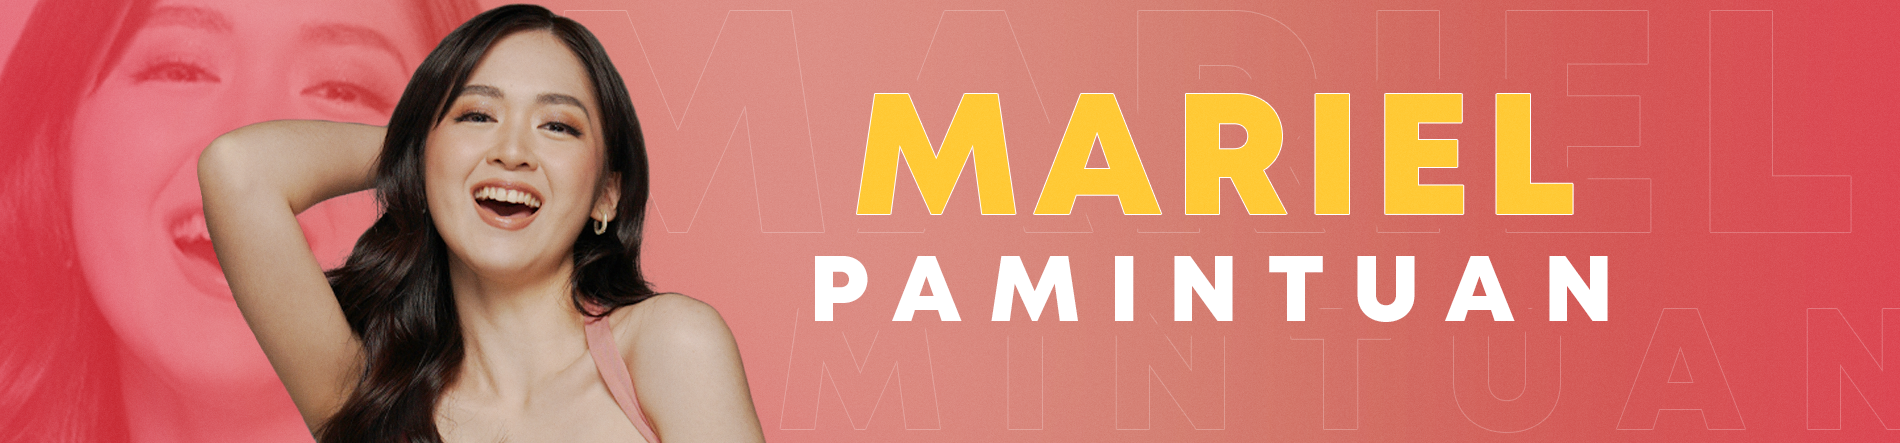 Mariel Pamintuan Desktop Banner